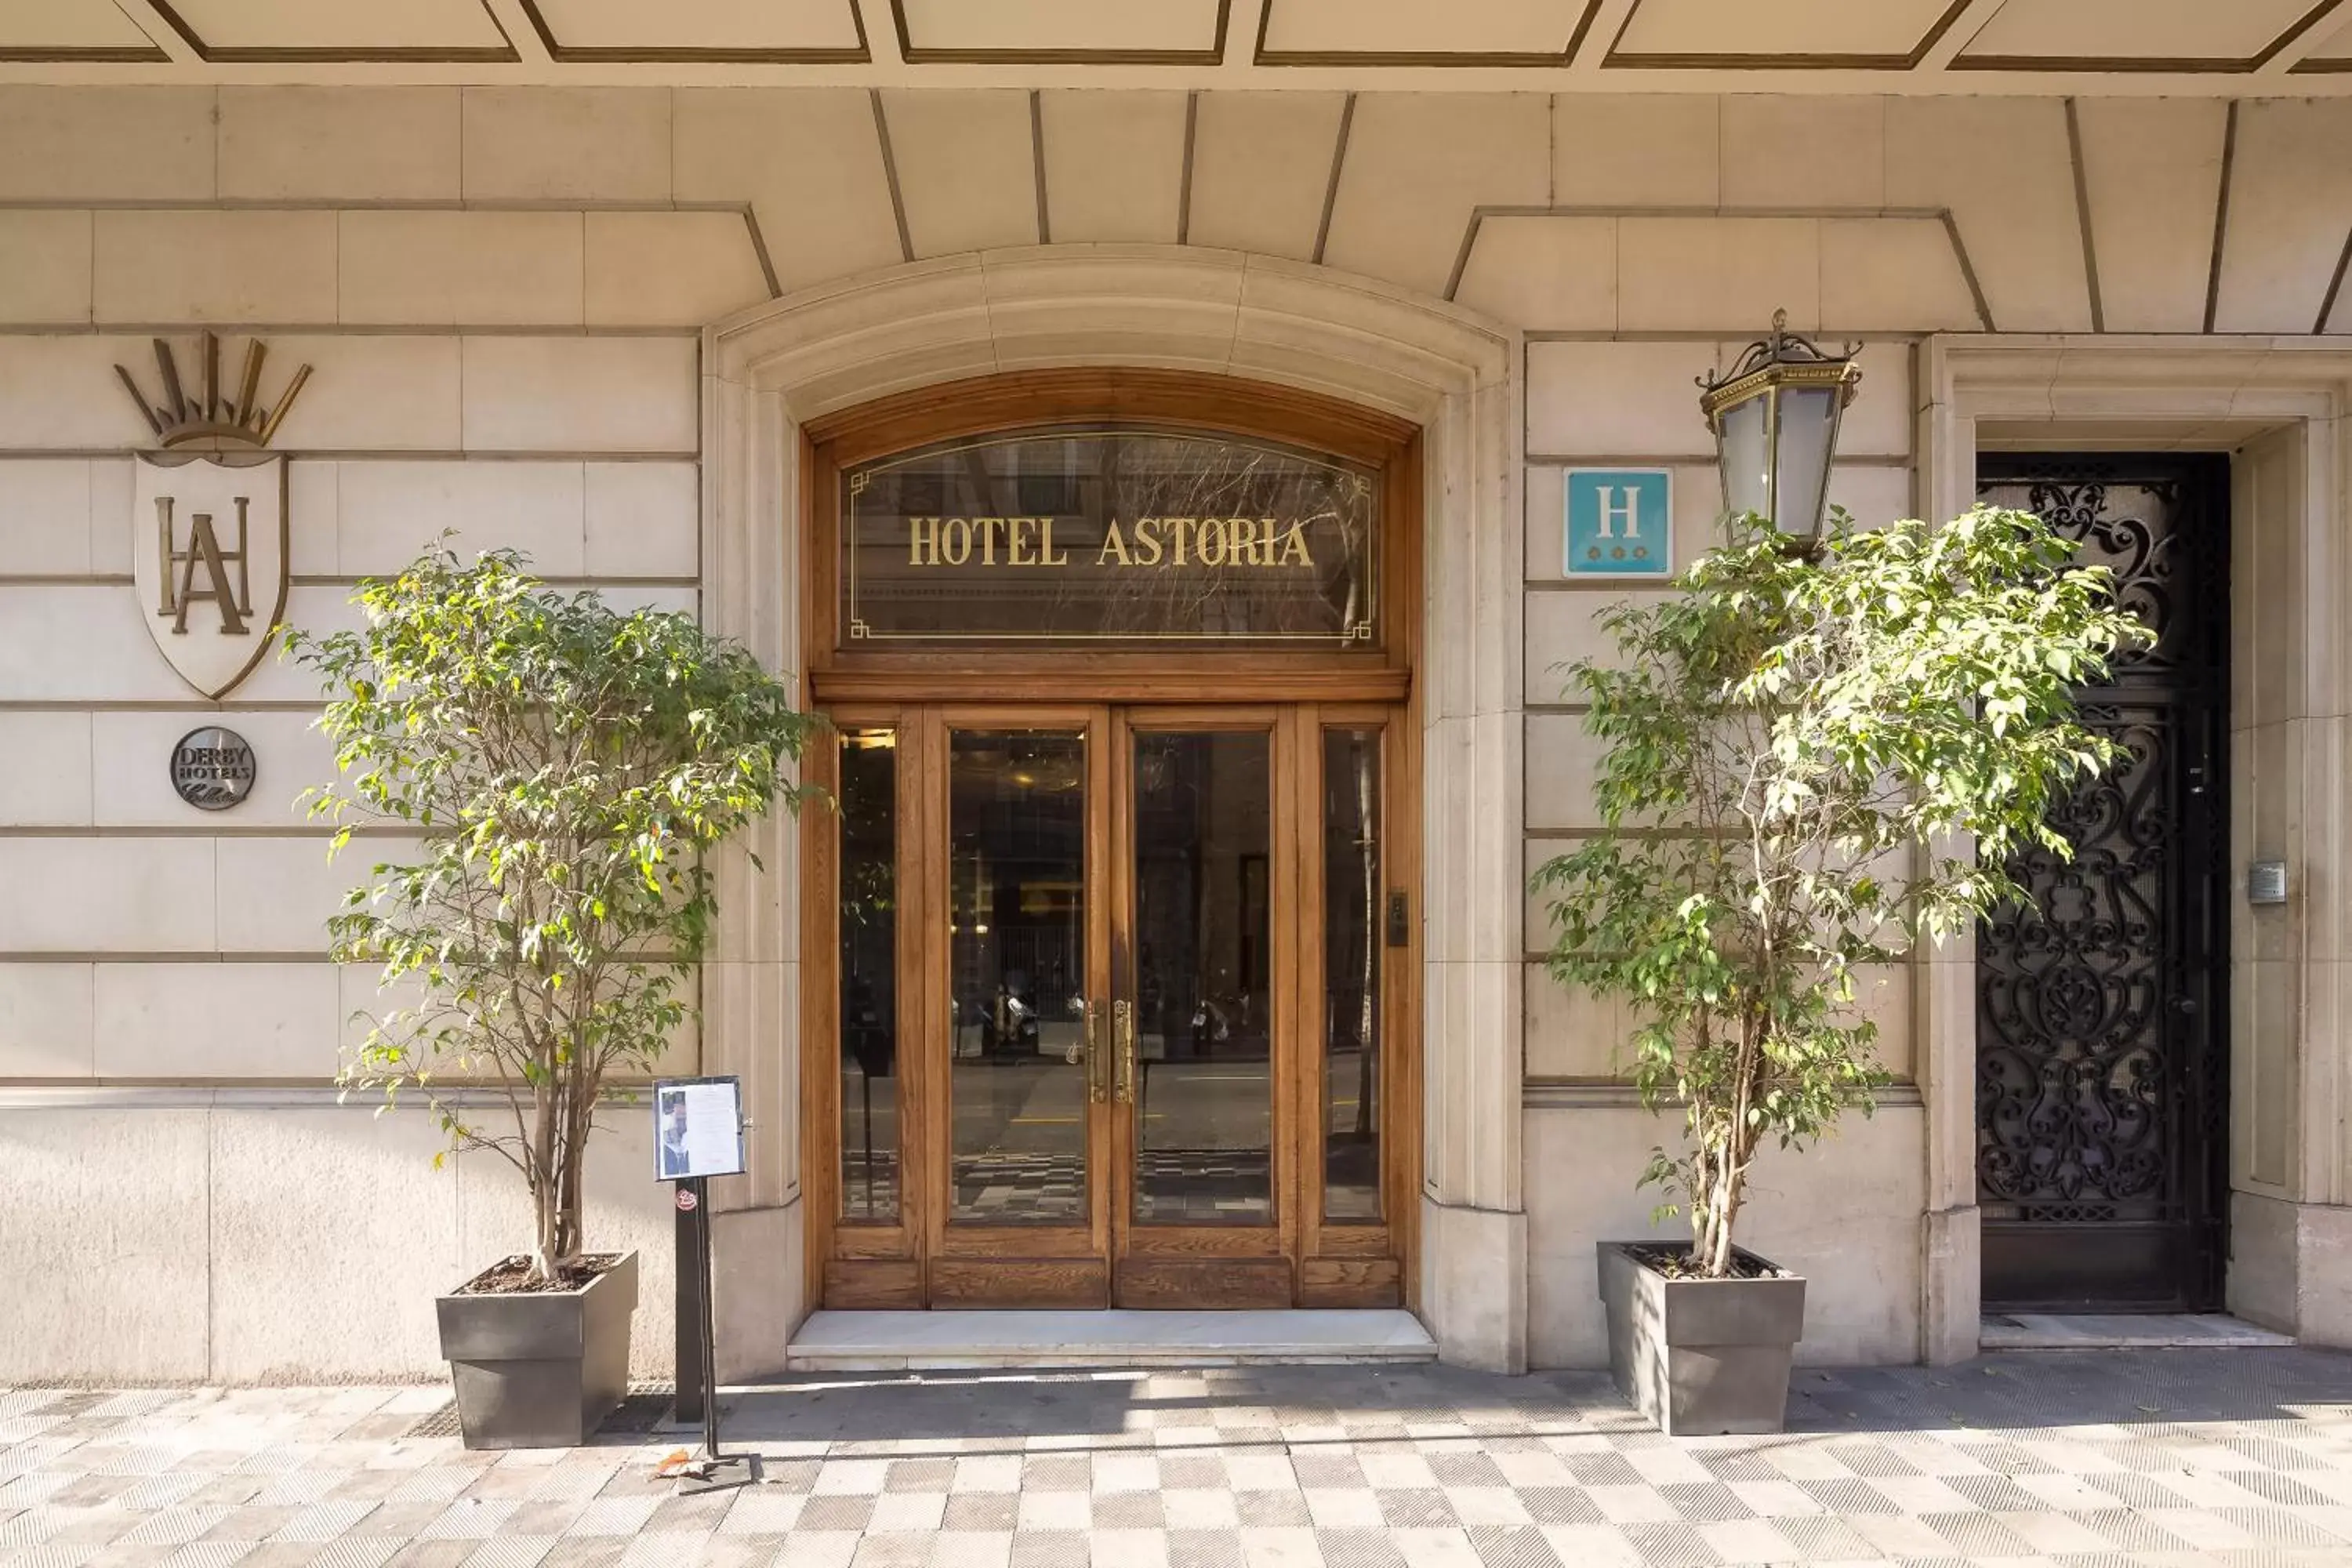 Facade/entrance in Hotel Astoria